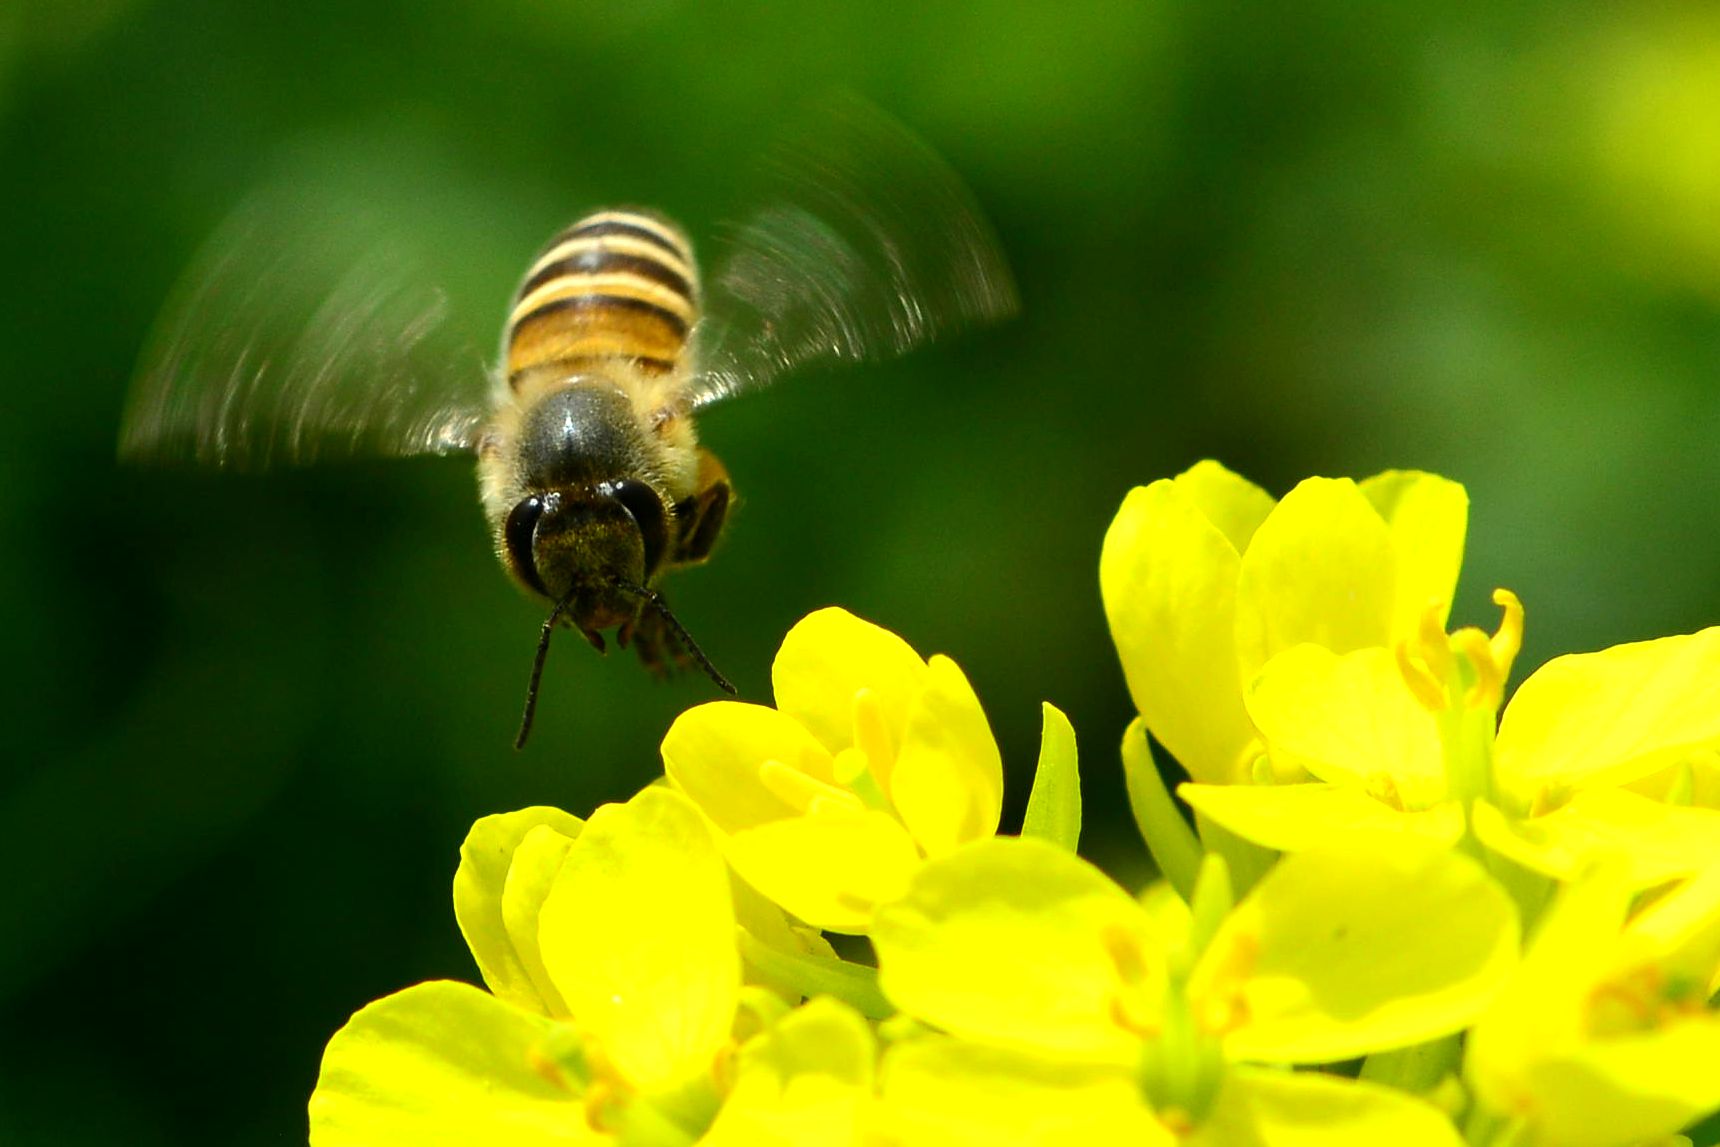 蜜蜂蜇了怎么处理蚂蚁庄园10.19 不小心被蜜蜂蜇伤正确的做法是|蜜蜂|怎么-360GAME-川北在线